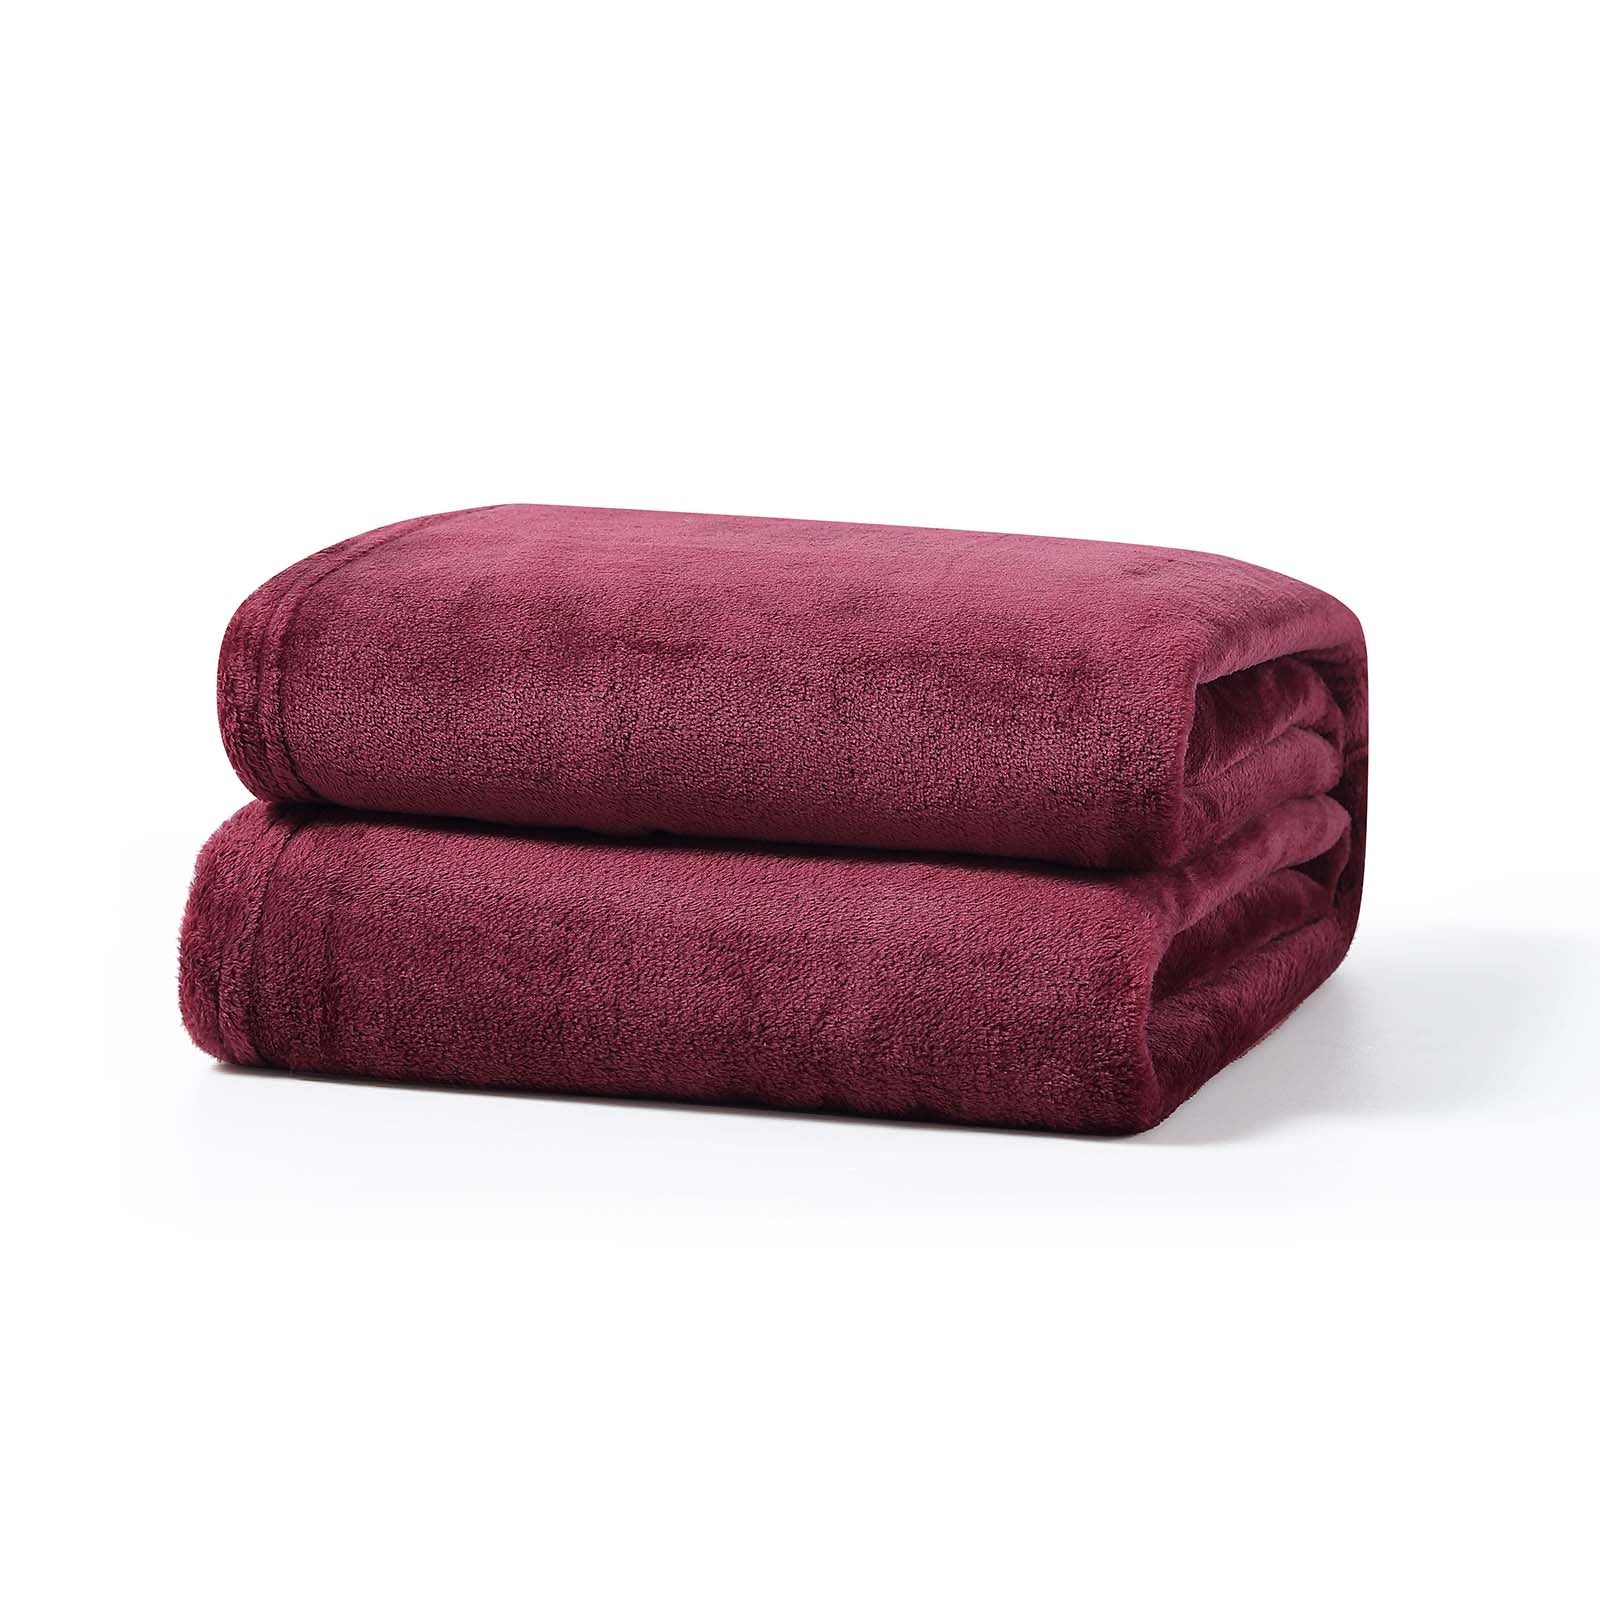 Fleece-Decke, dicke Kuscheldecke aus Fleece, Bordeaux